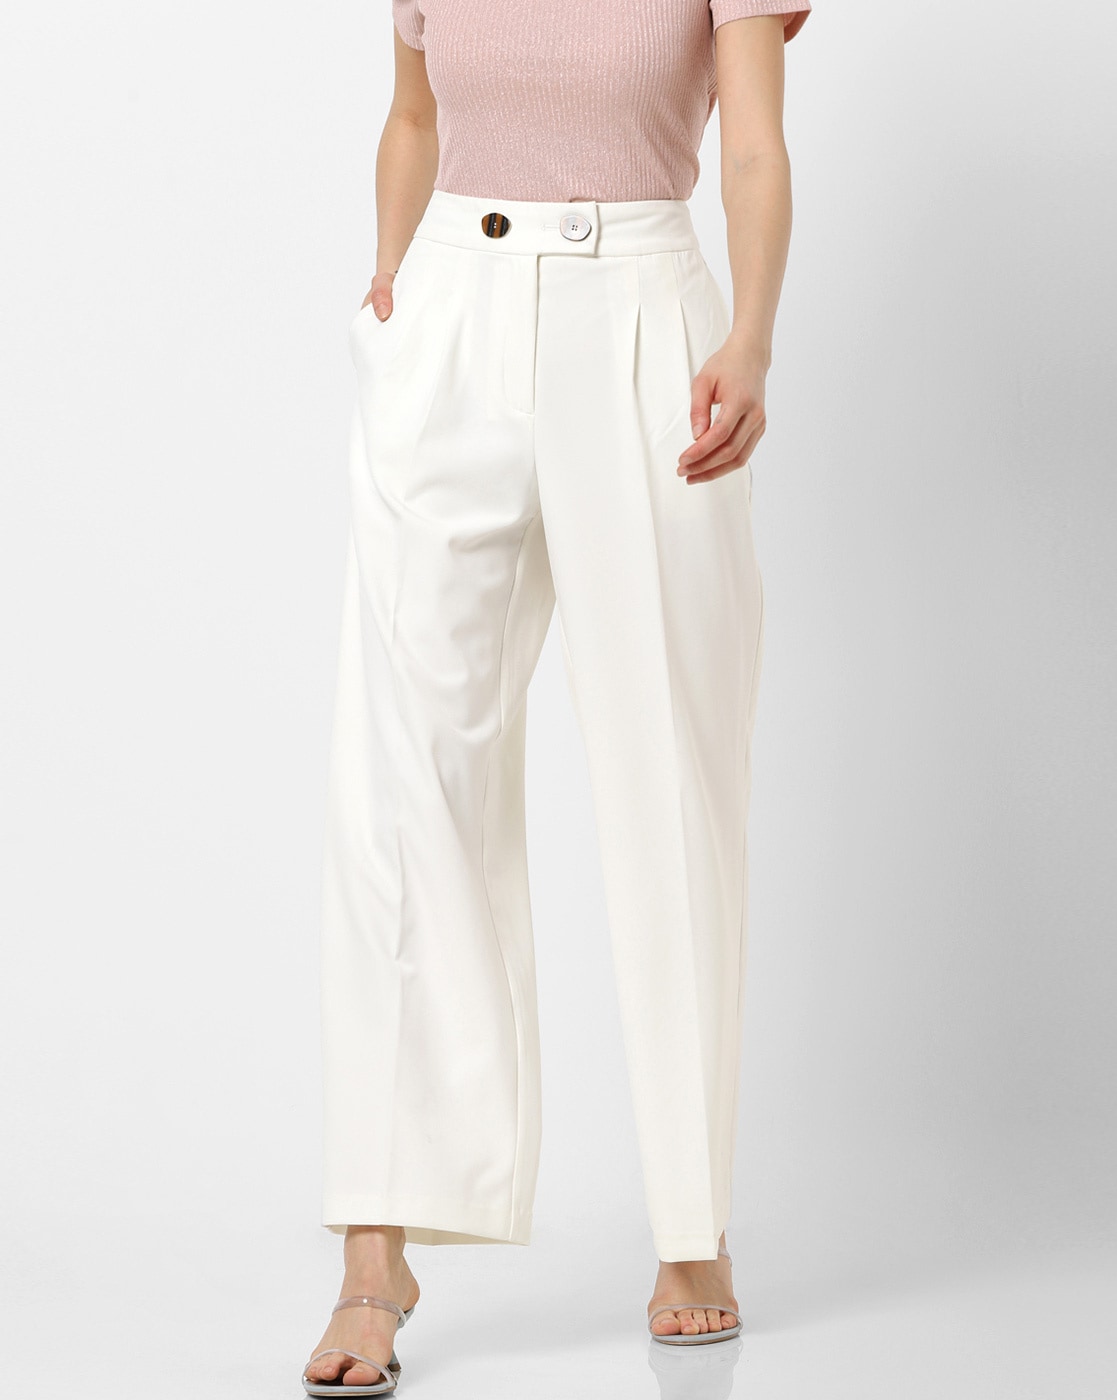 Buy Women Cream Solid Formal Regular Fit Trousers Online  802370  Van  Heusen